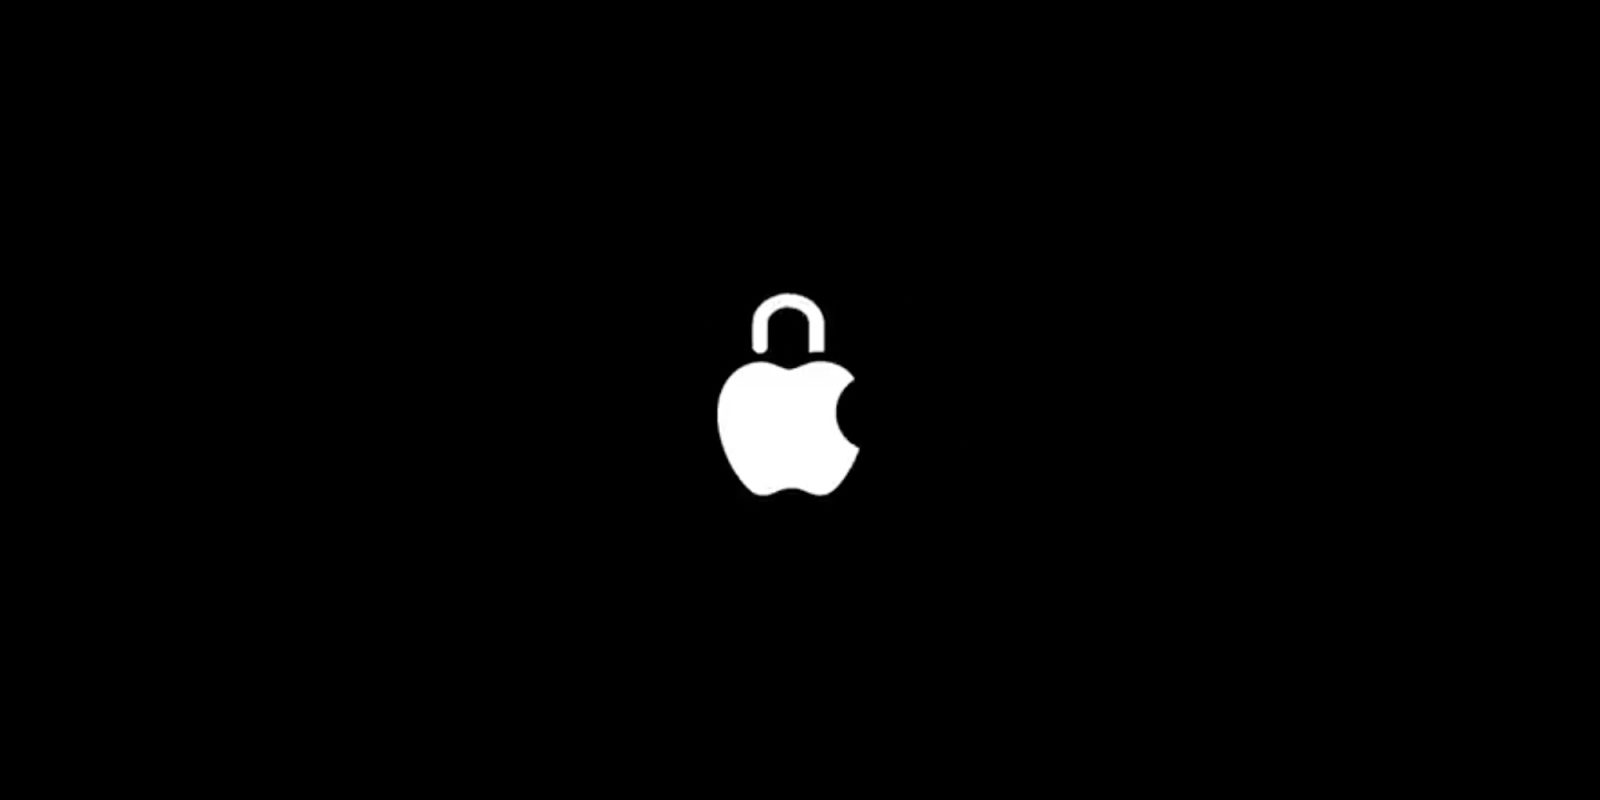 Apple privacy Safari tracking prevention